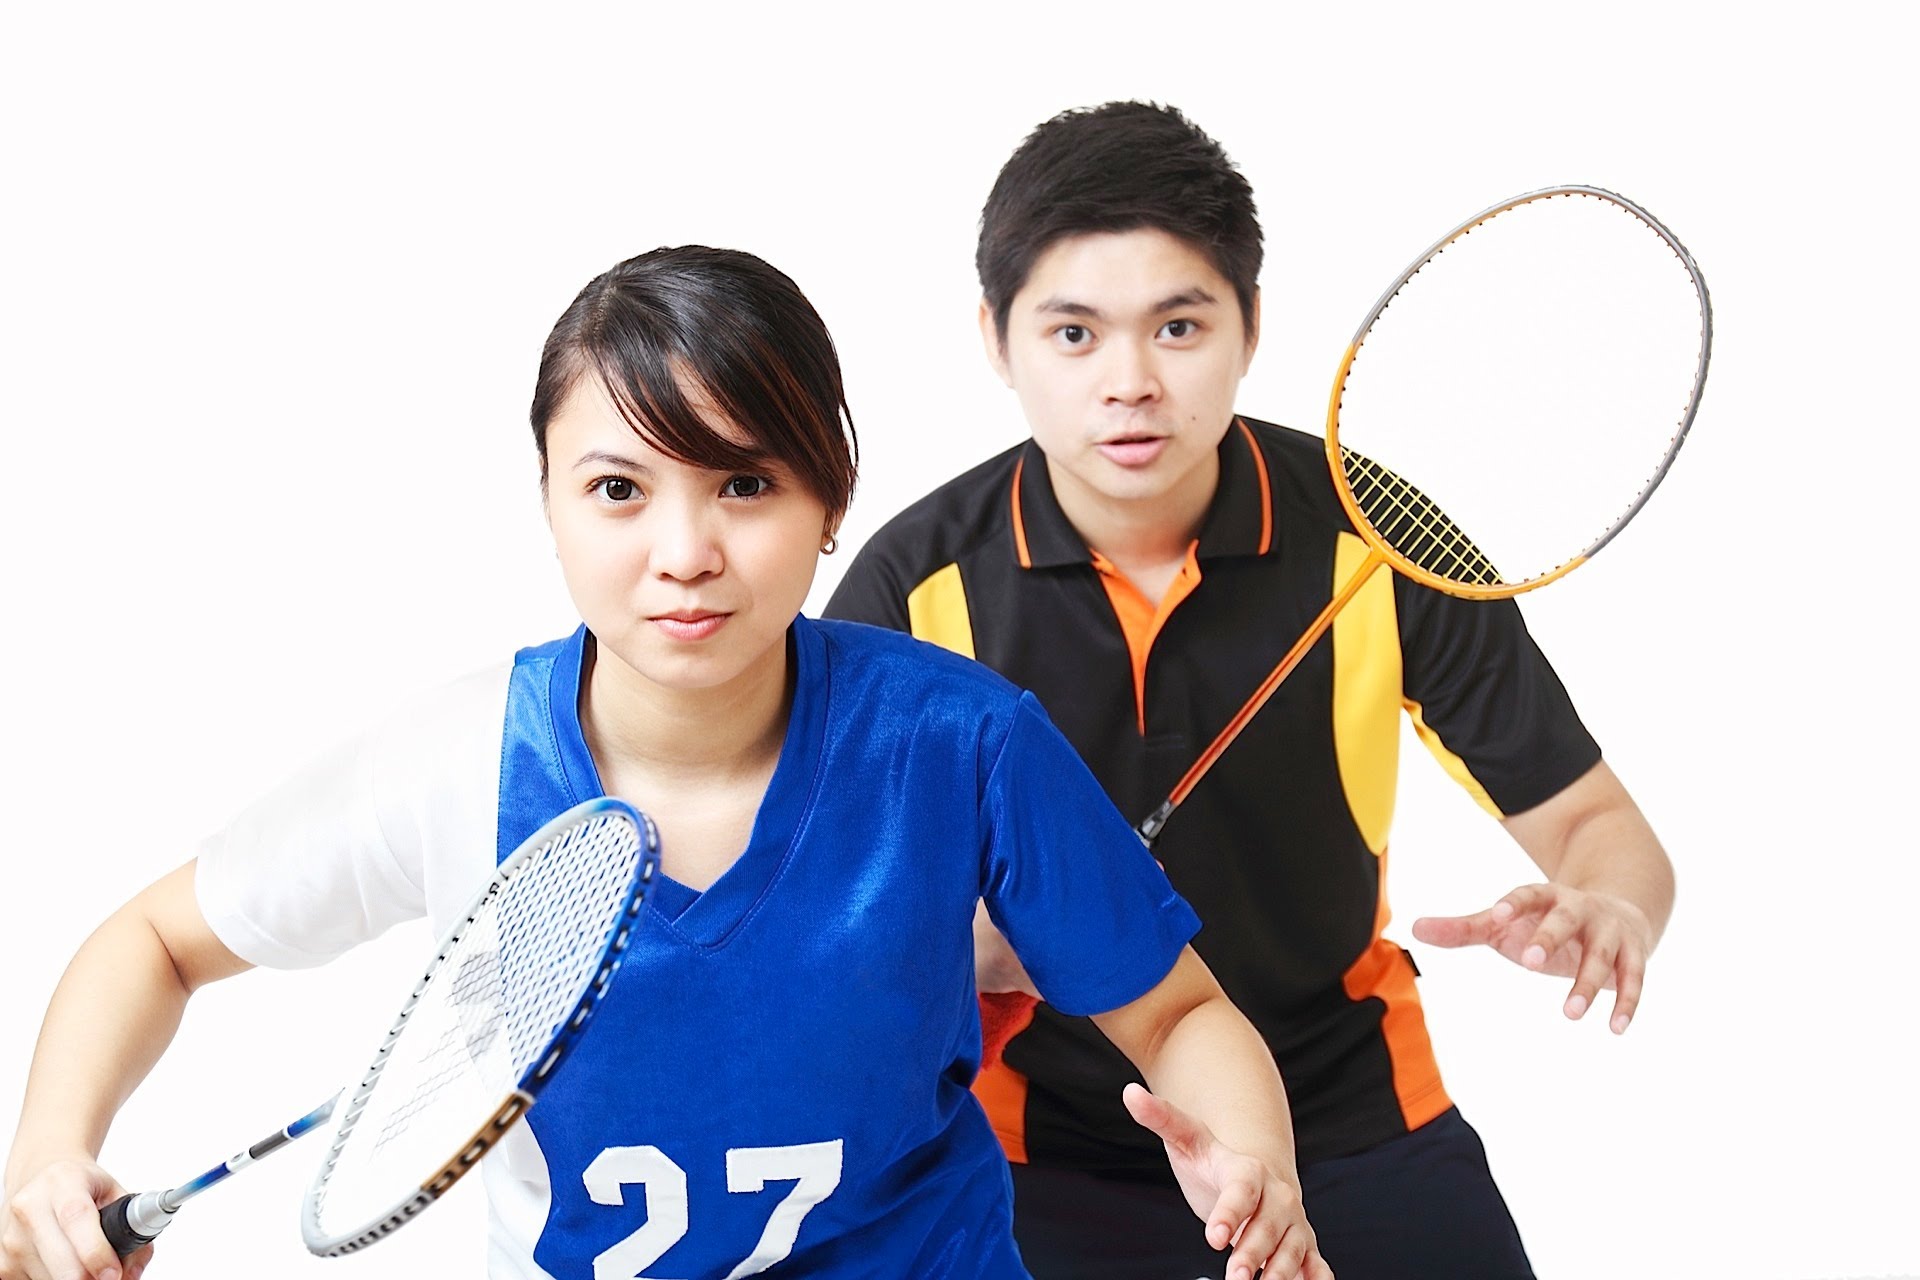 Badminton badminton doubles